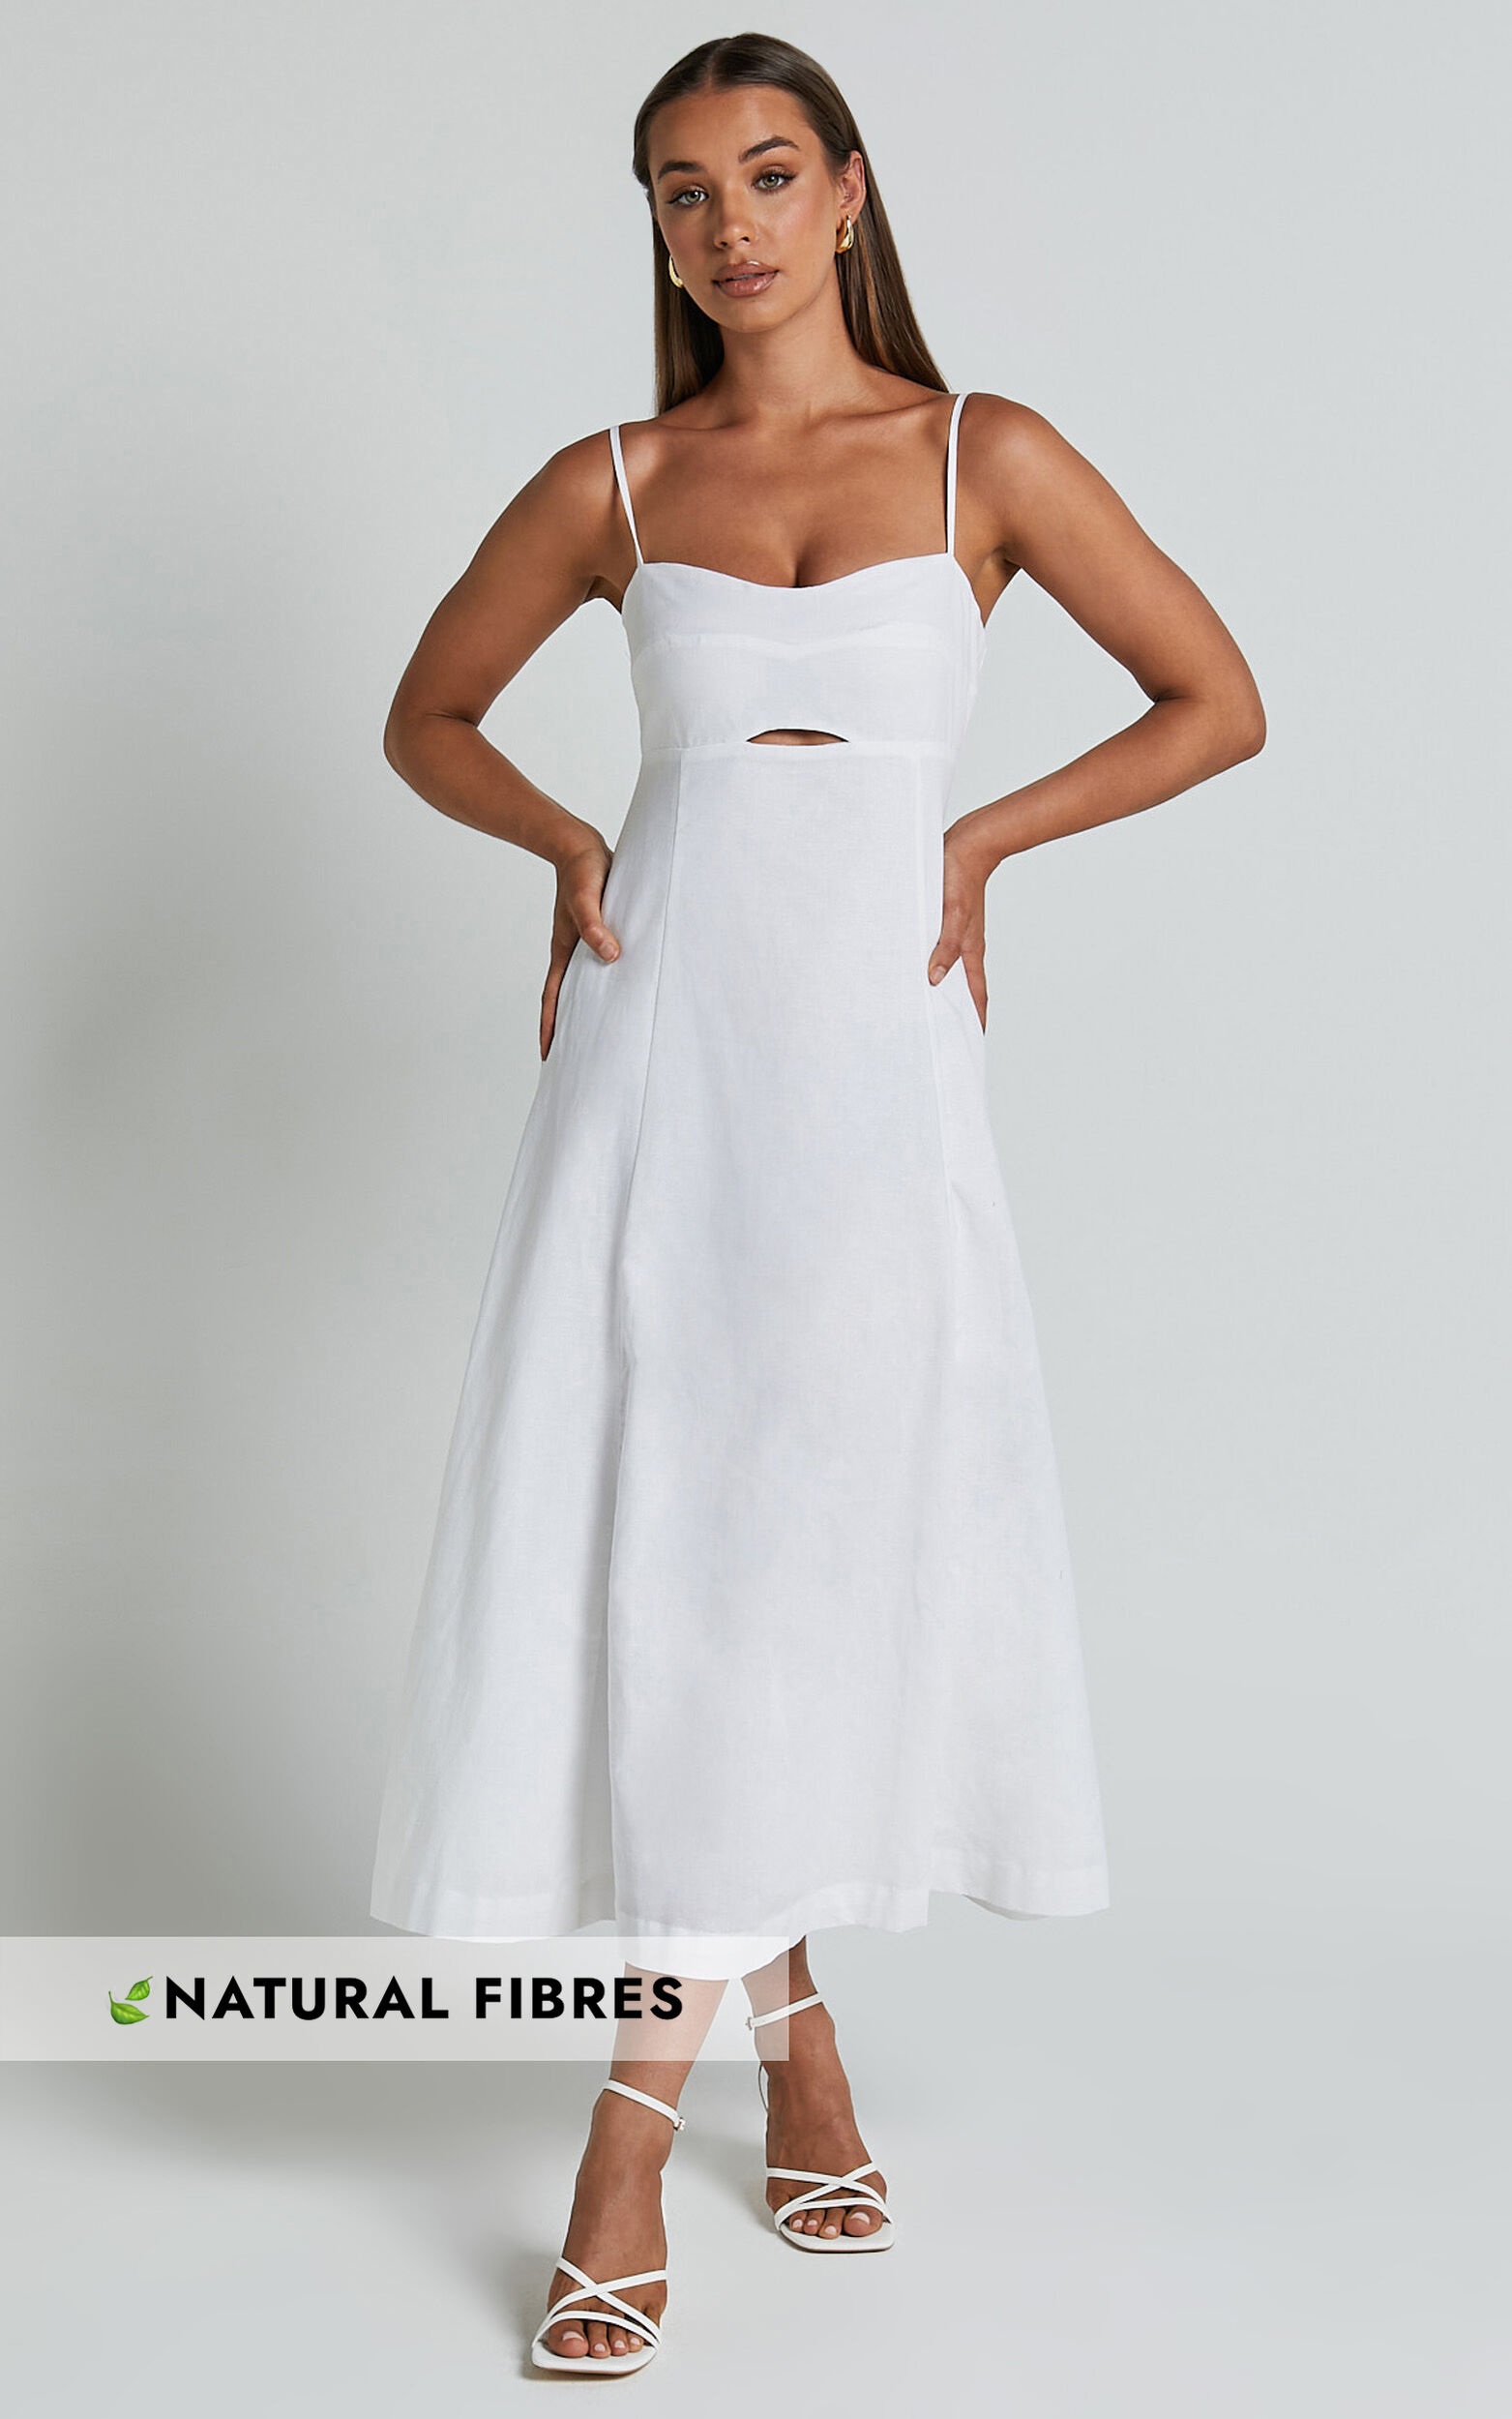 Cotte simple linen dress